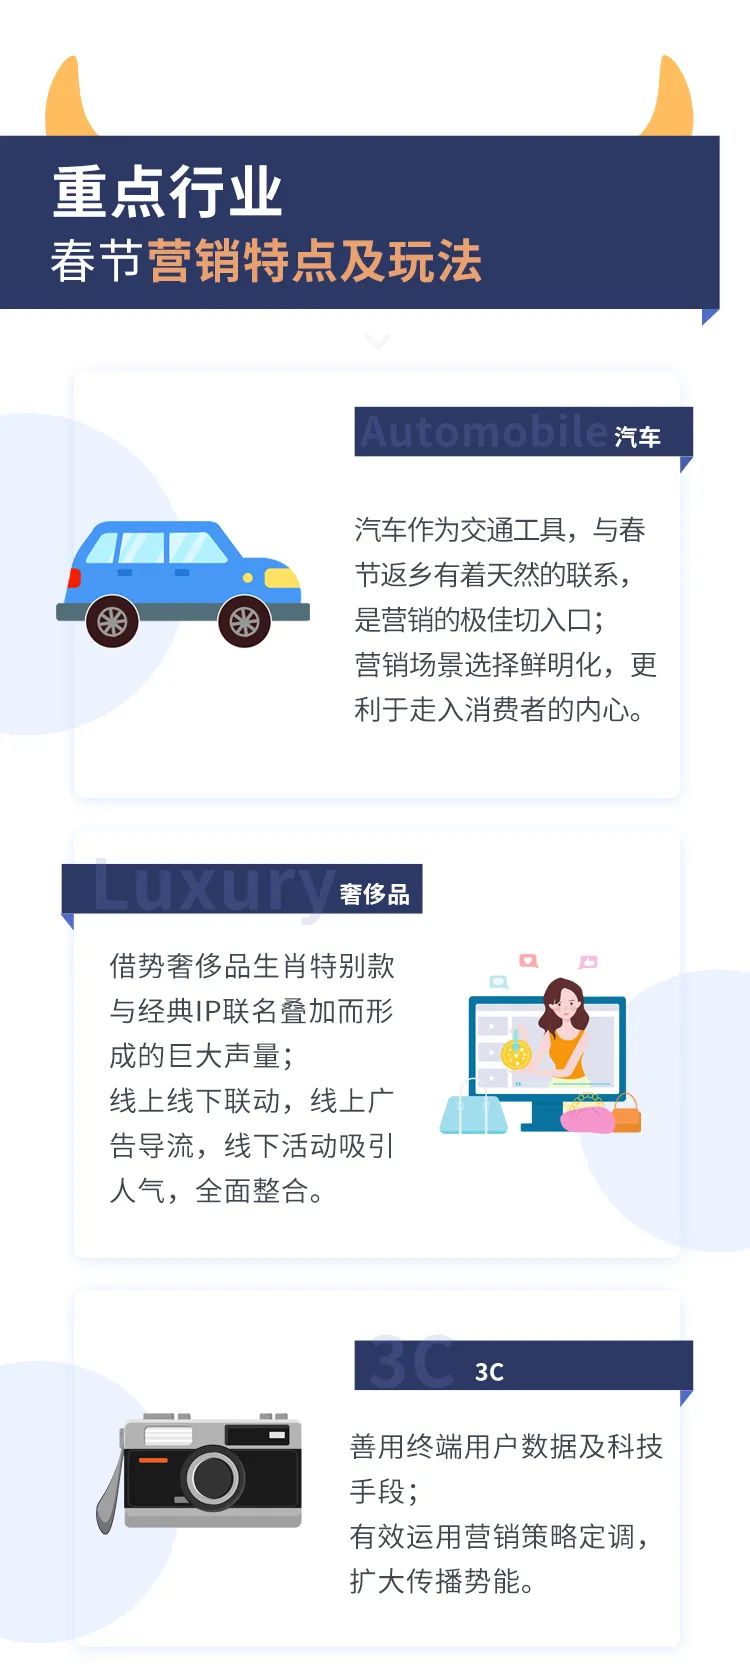 春节营销“指南”——新常态下的中国新年品牌洞察